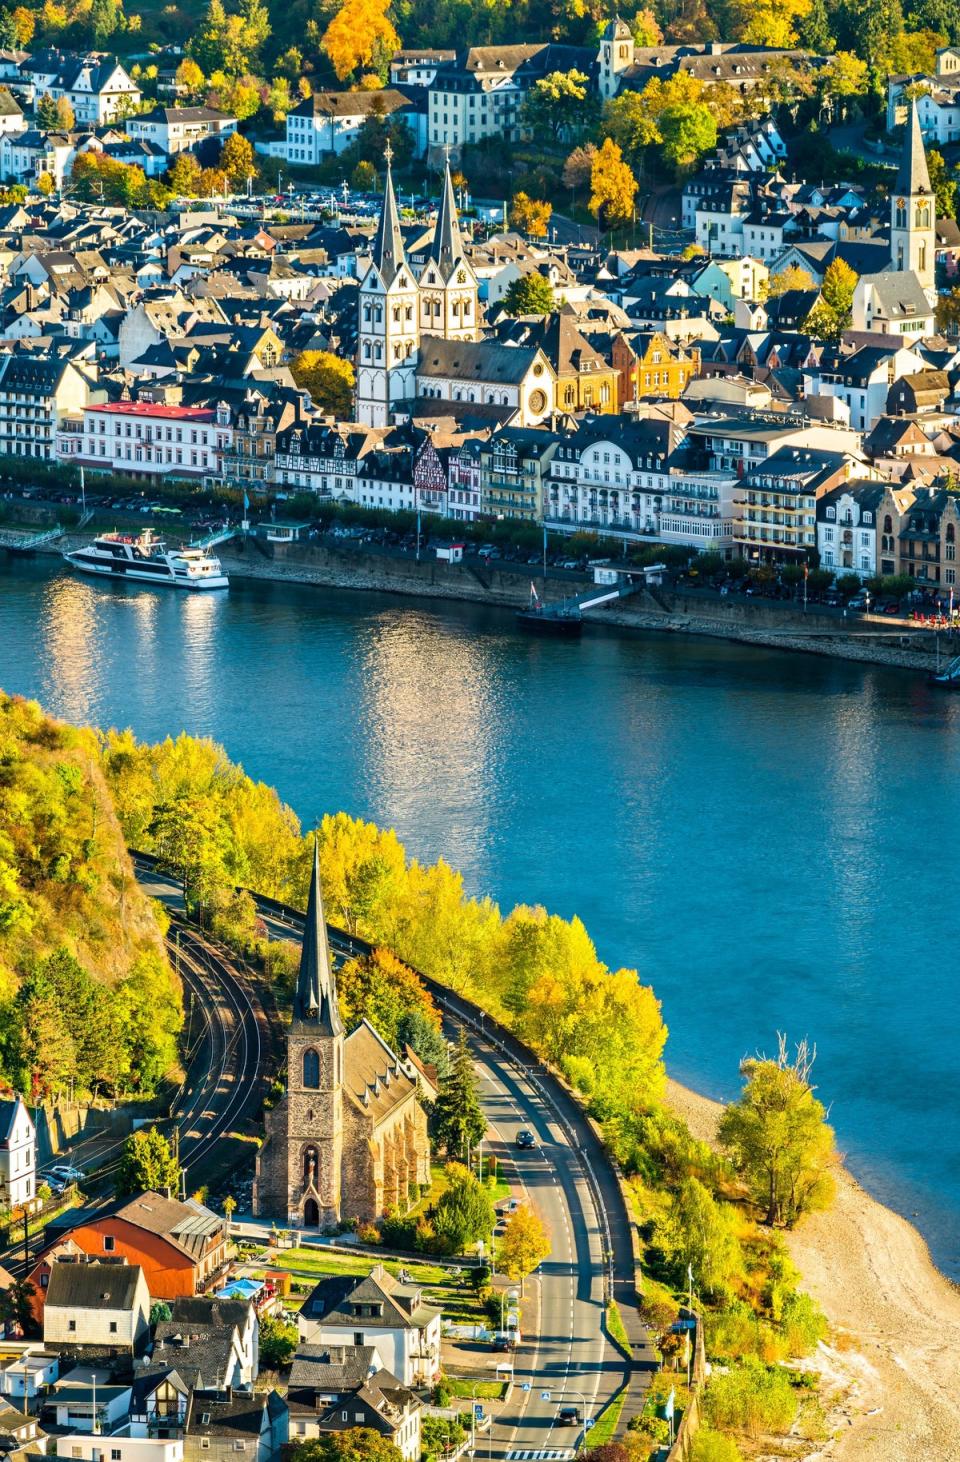 Δείτε τις πόλεις της Ευρώπης από μια διαφορετική οπτική γωνία (Shutterstock /)